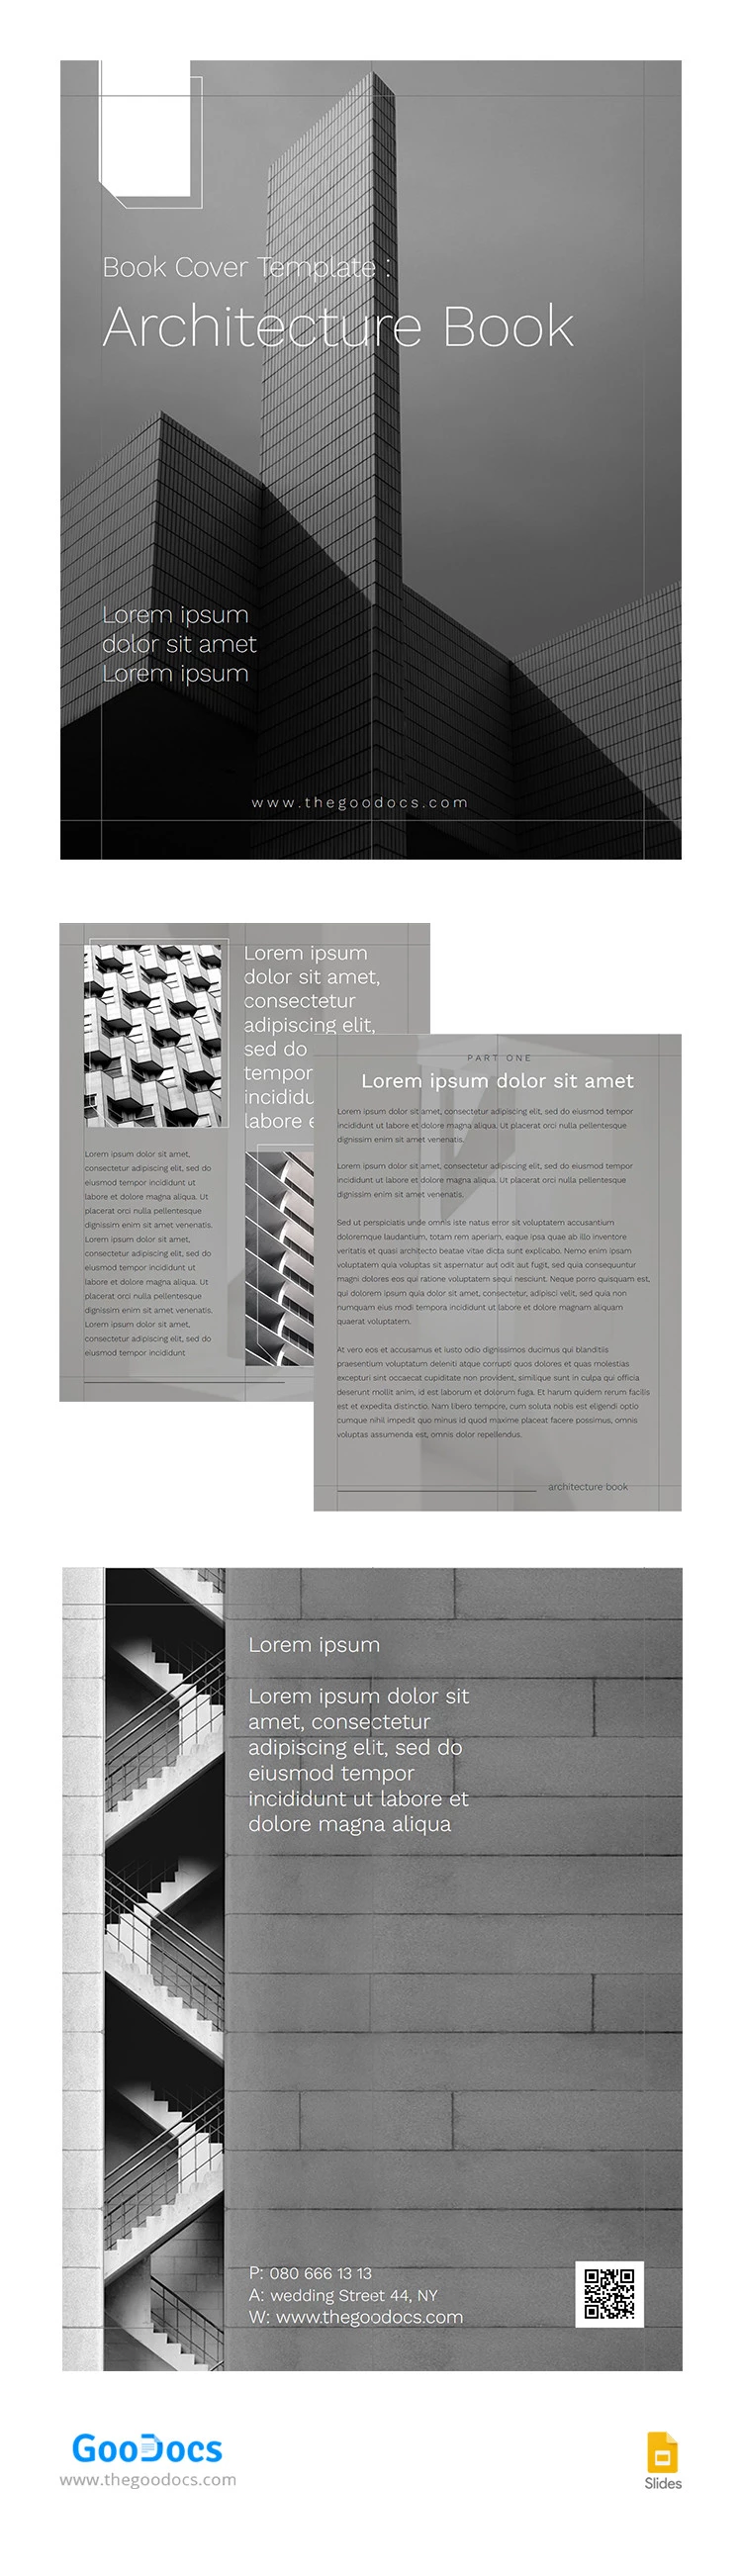 Livre d'architecture élégant en gris - free Google Docs Template - 10065665